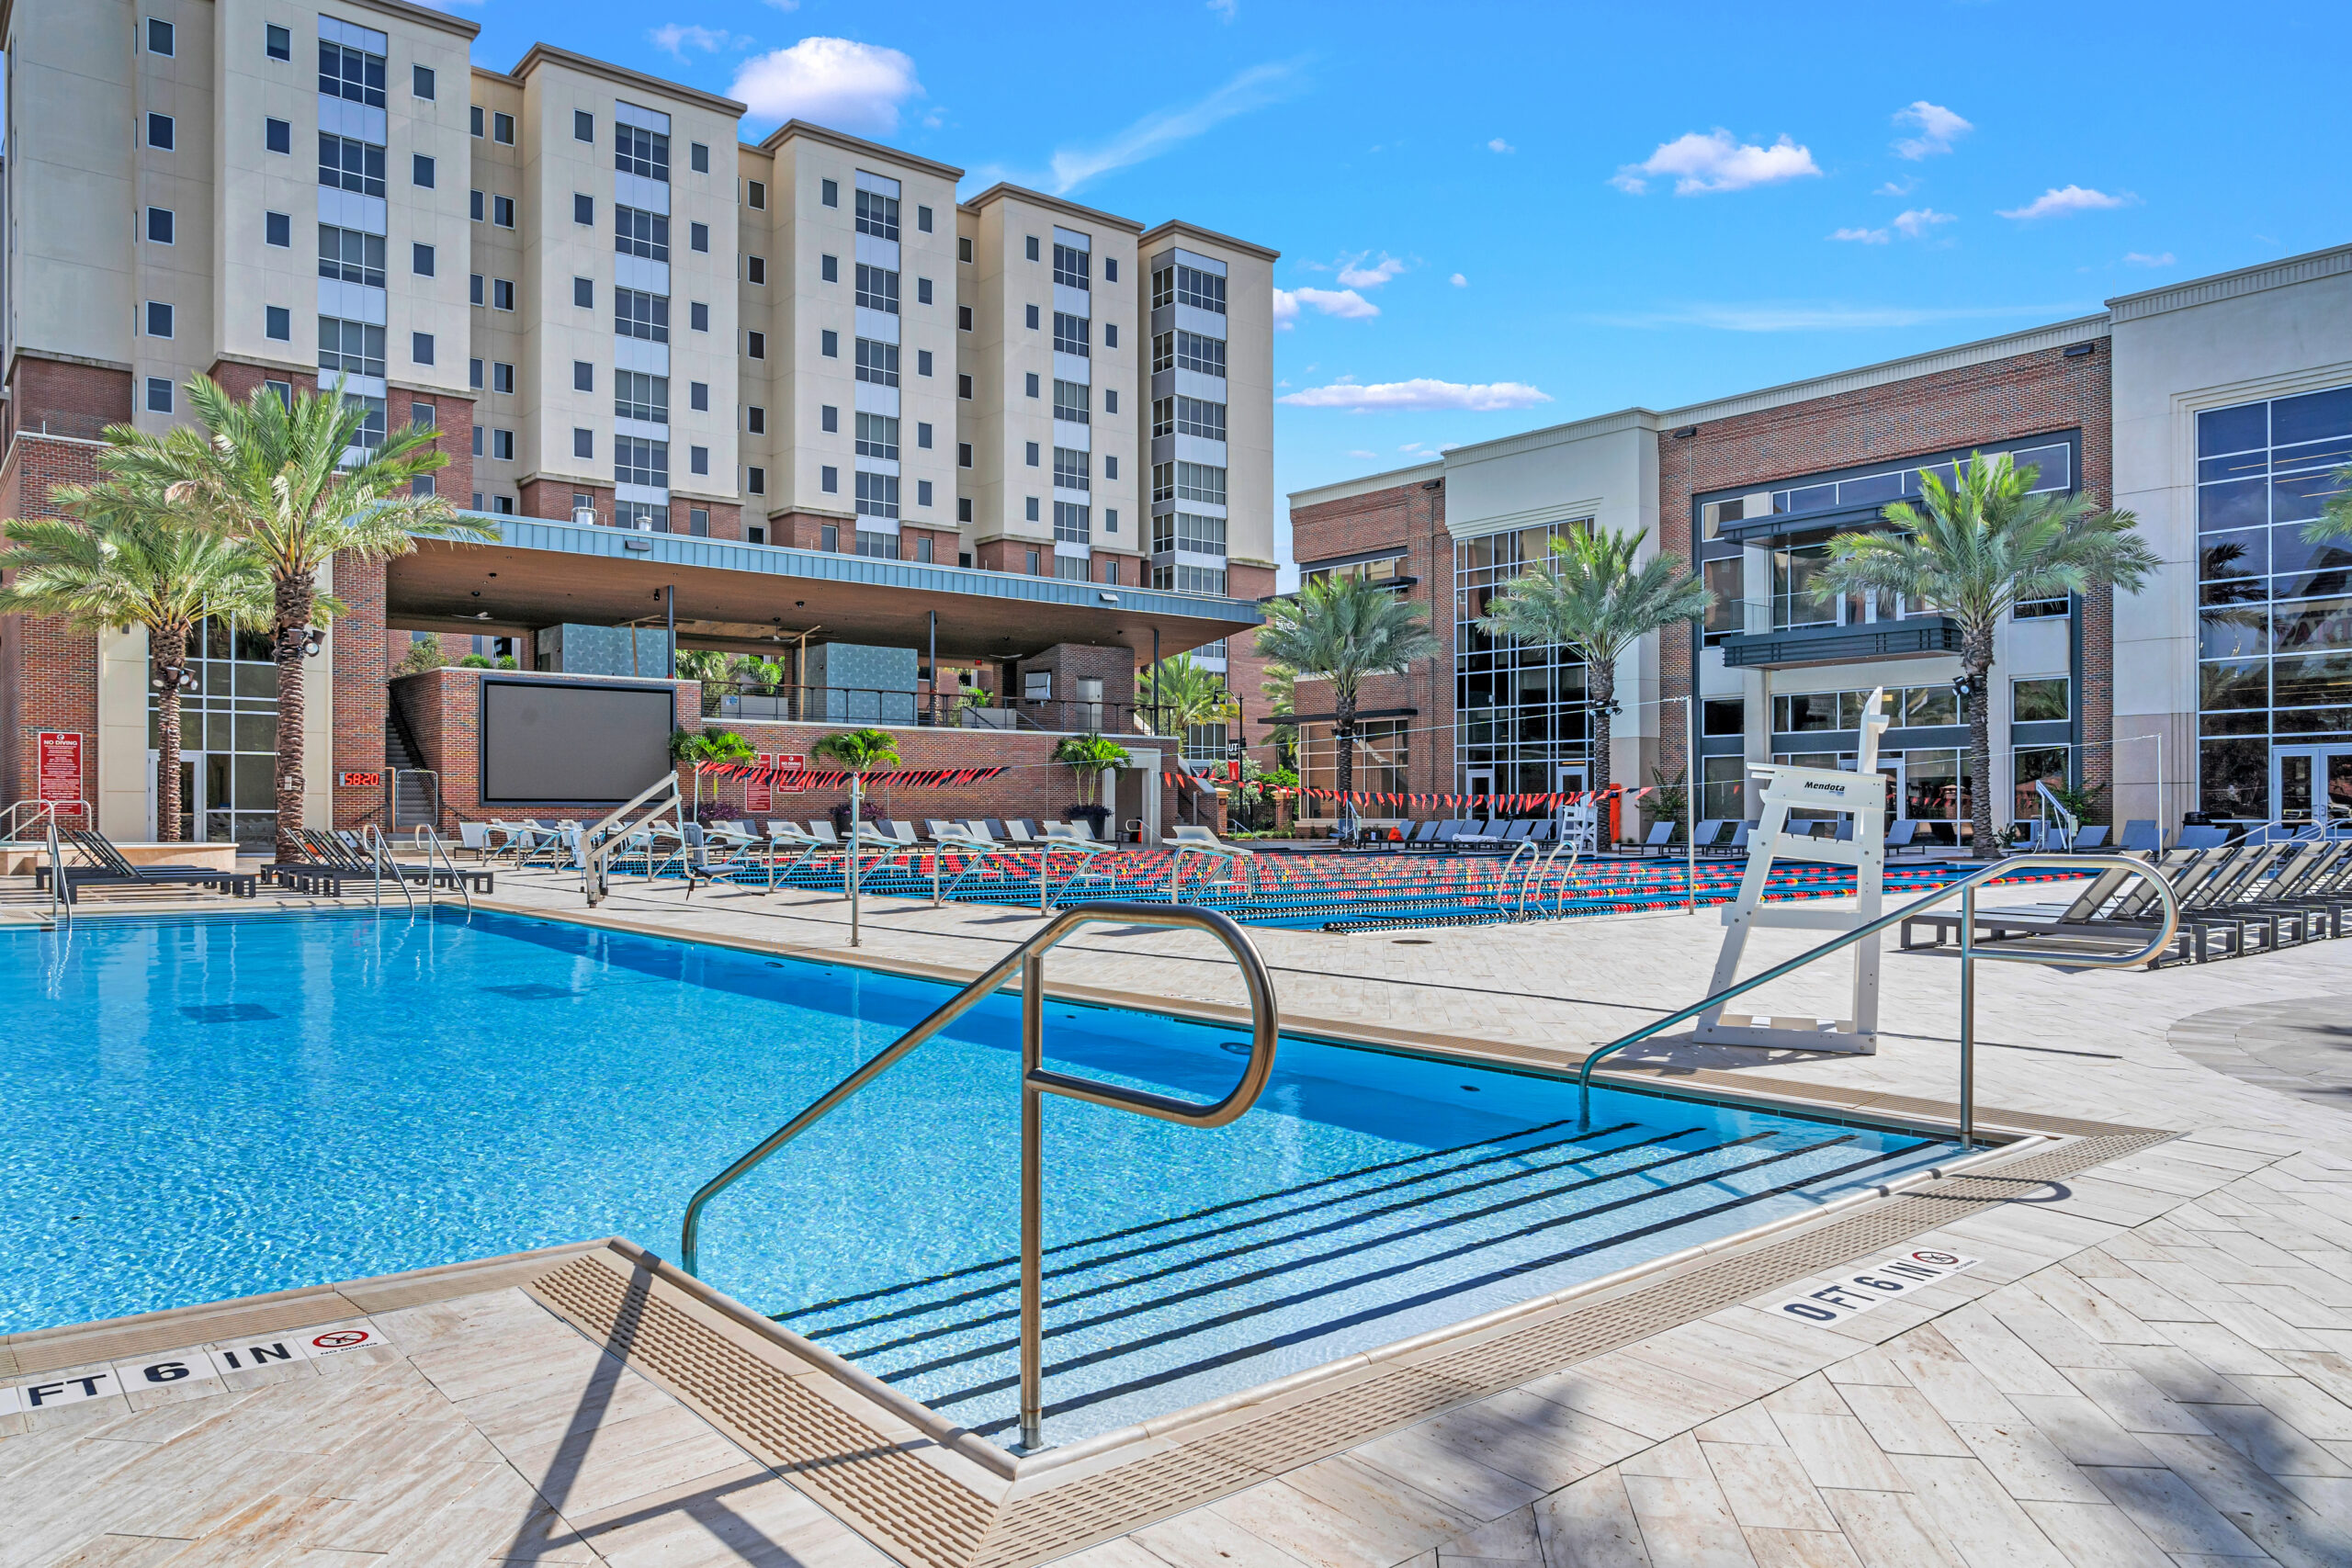 Jonite pool grates in Tampa University